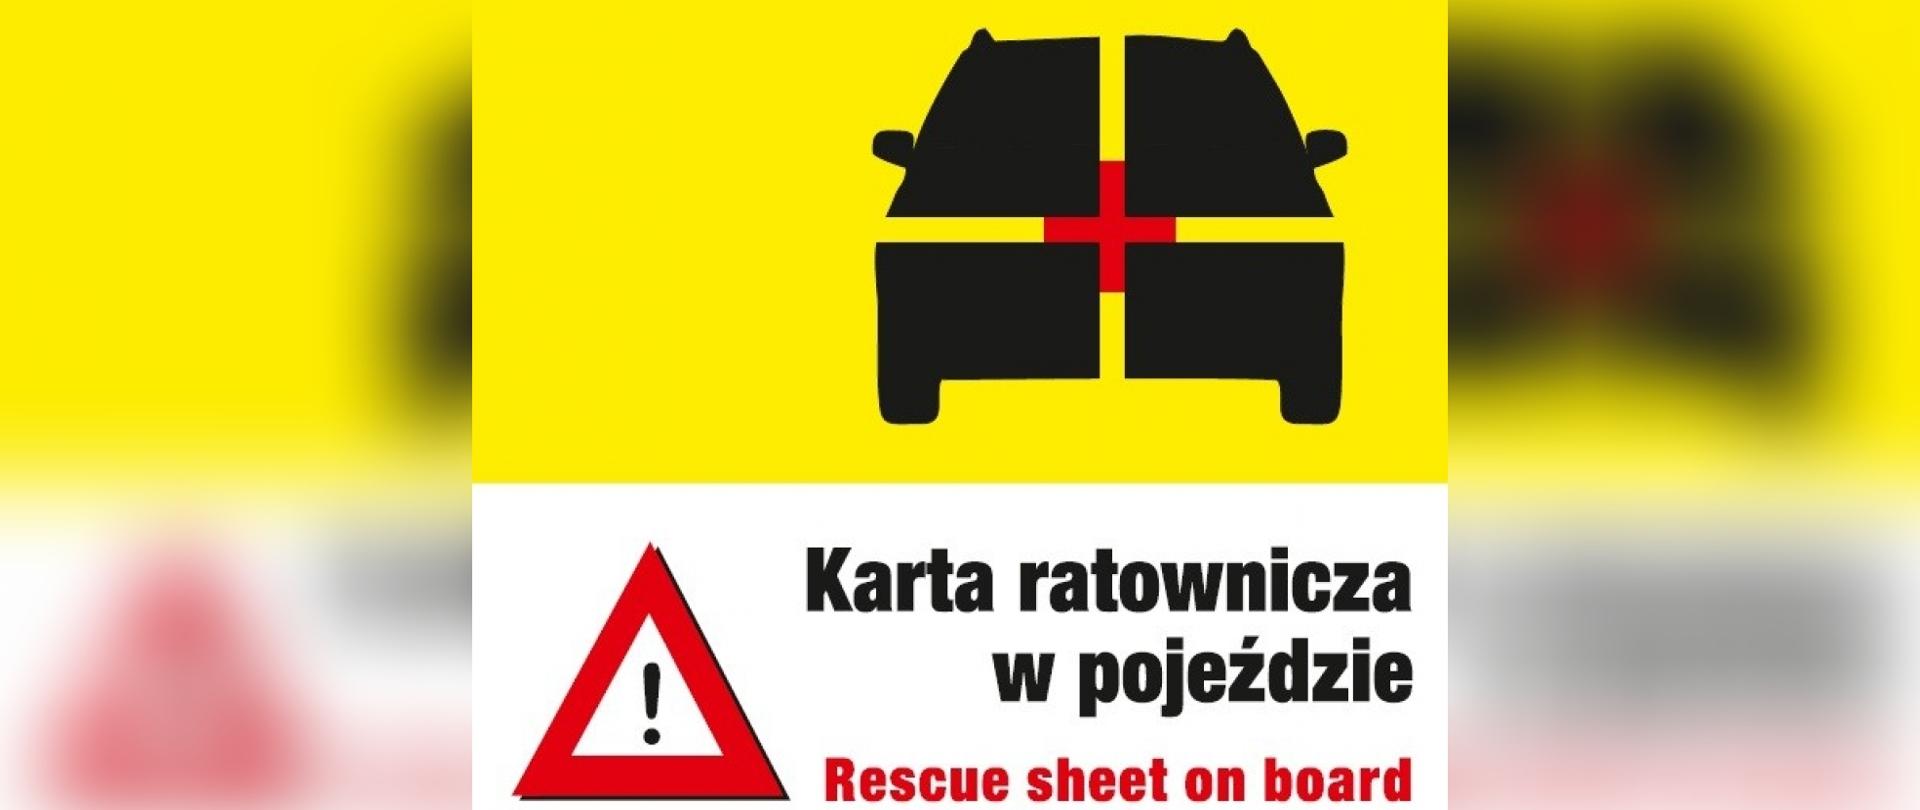 Rysunek samochodu osobowego z czerwonym krzyżem pośrodku na żółtym tle. Poniżej znak ostrzegawczy i napis: Karta ratownicza w pojeździe.
